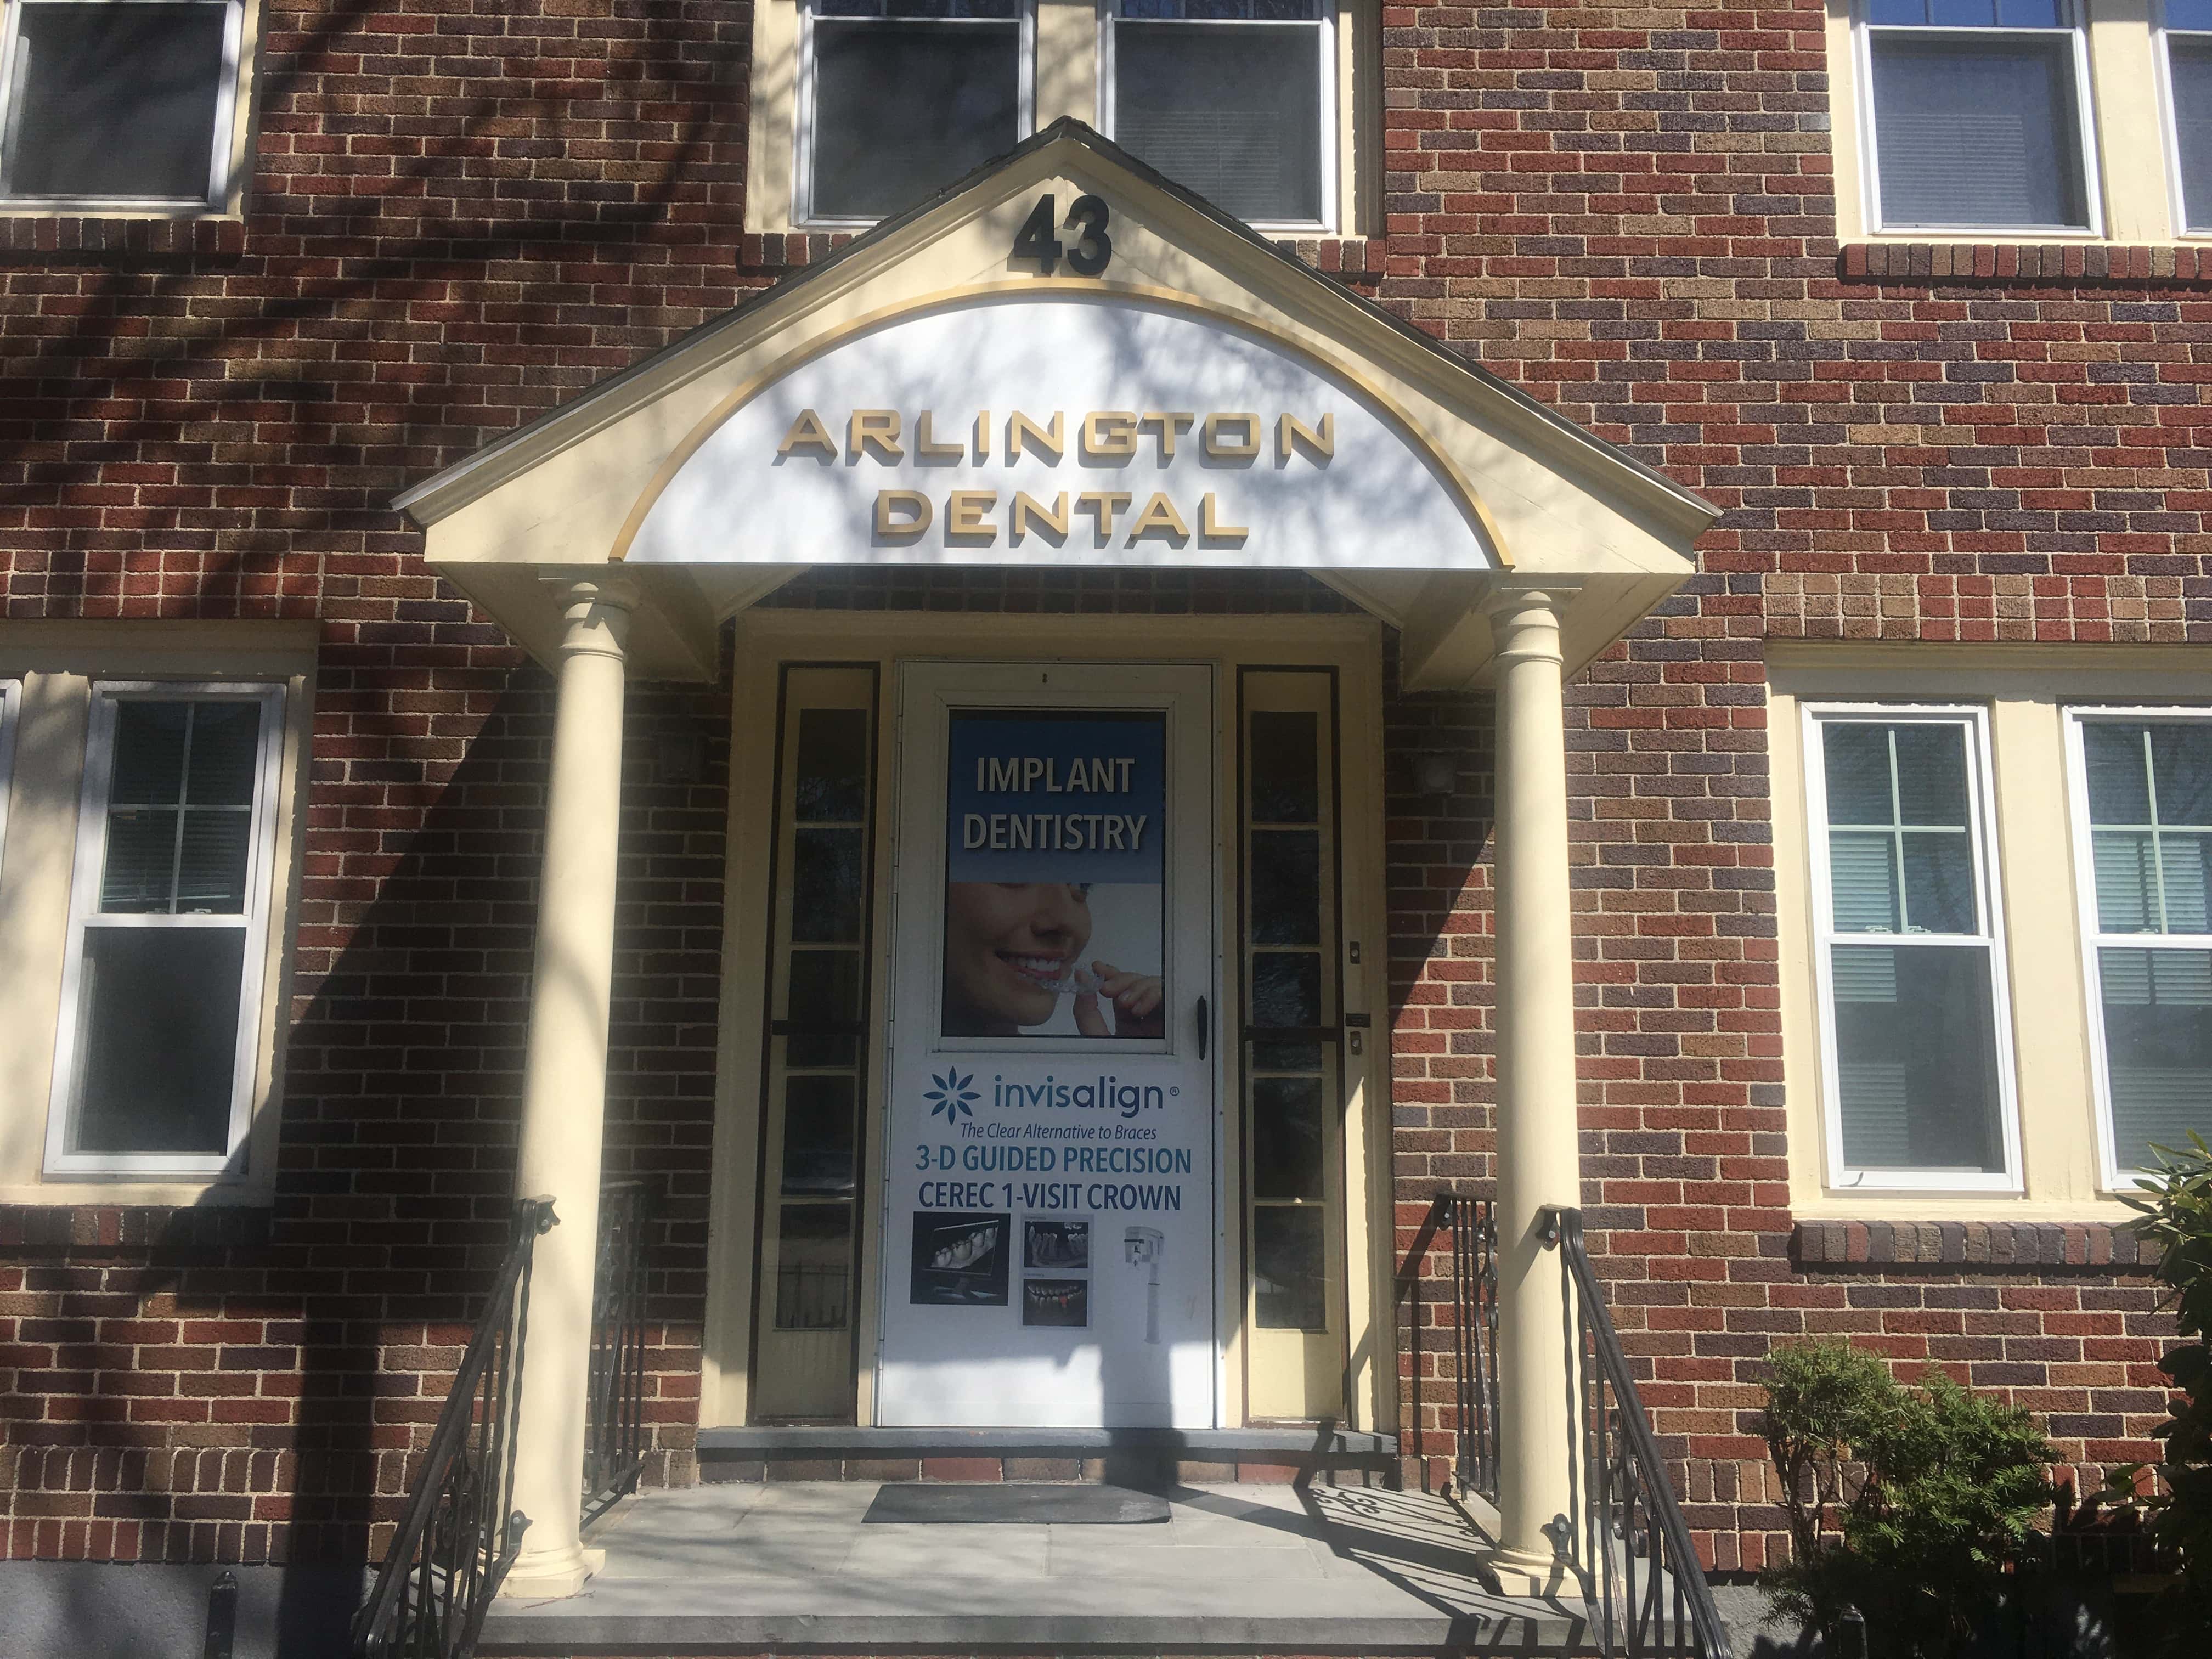 Arlington Dental, US, dentist